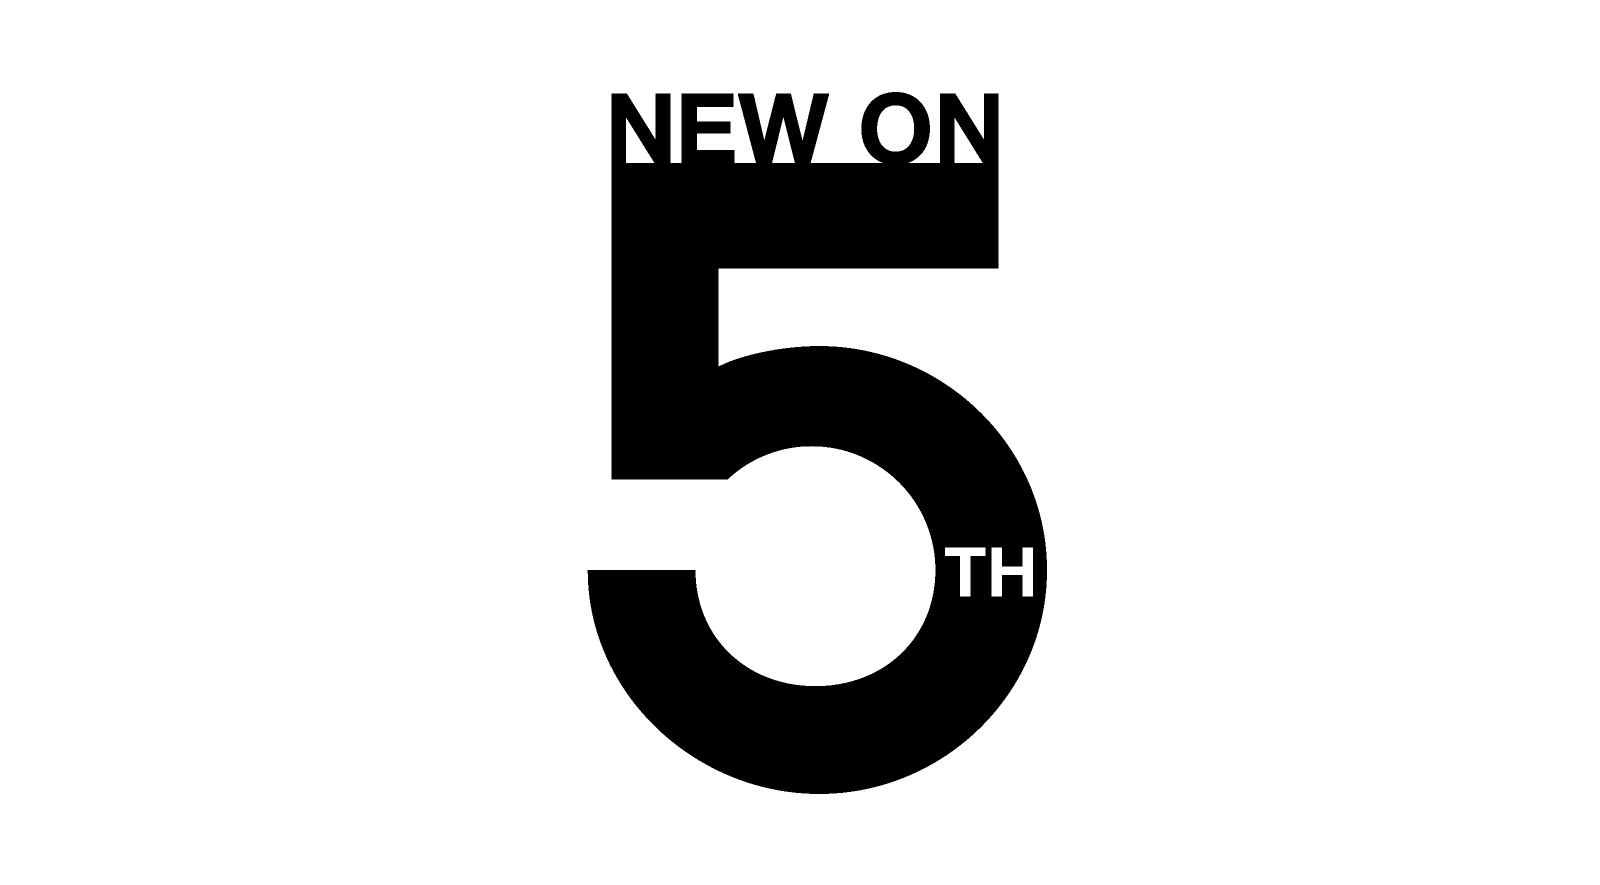 mslk-new-on-5th-logo